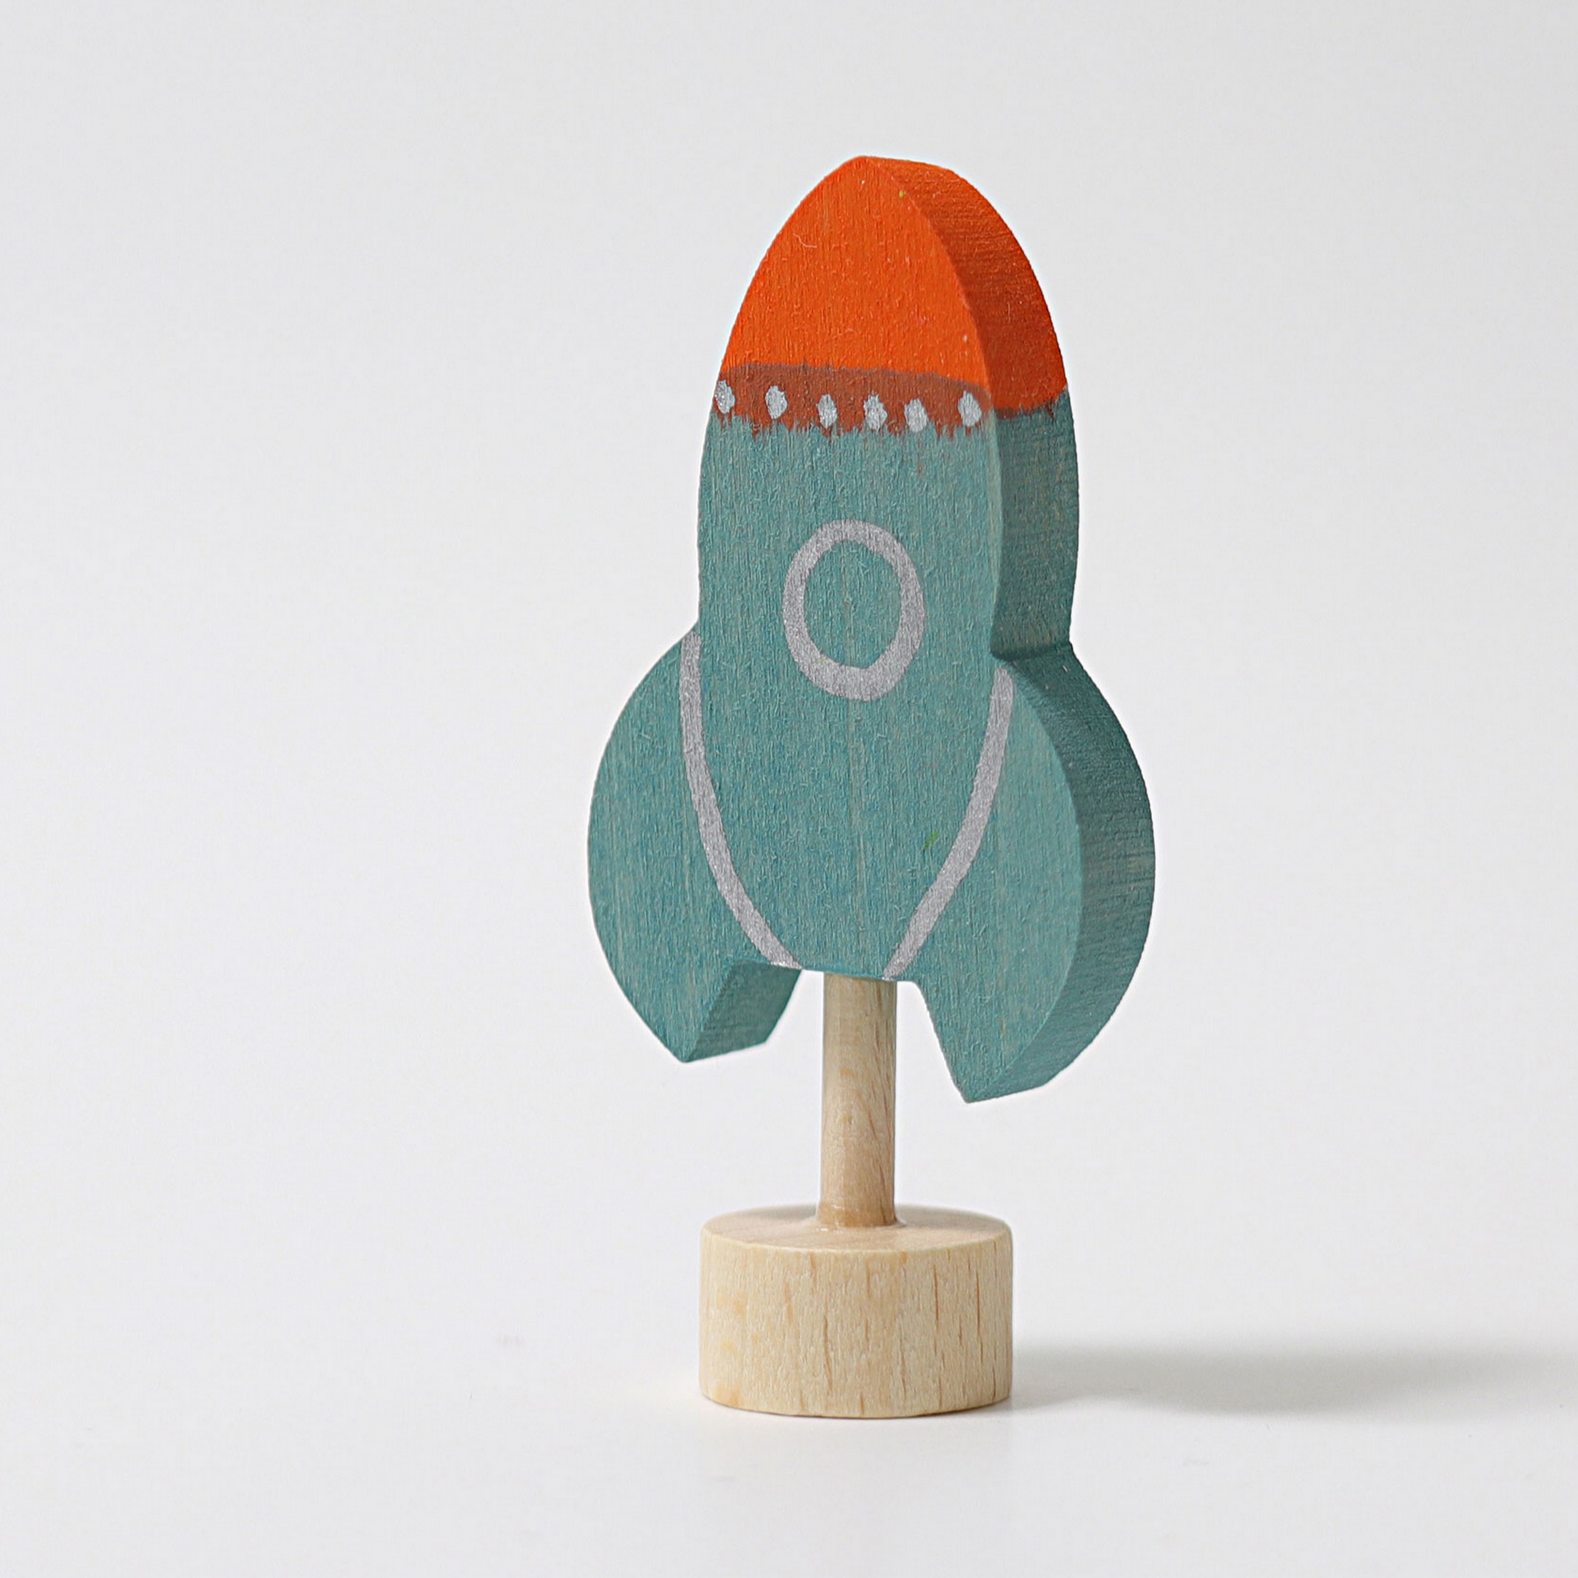 Grimm's Decorative Figure: Rocket Ship